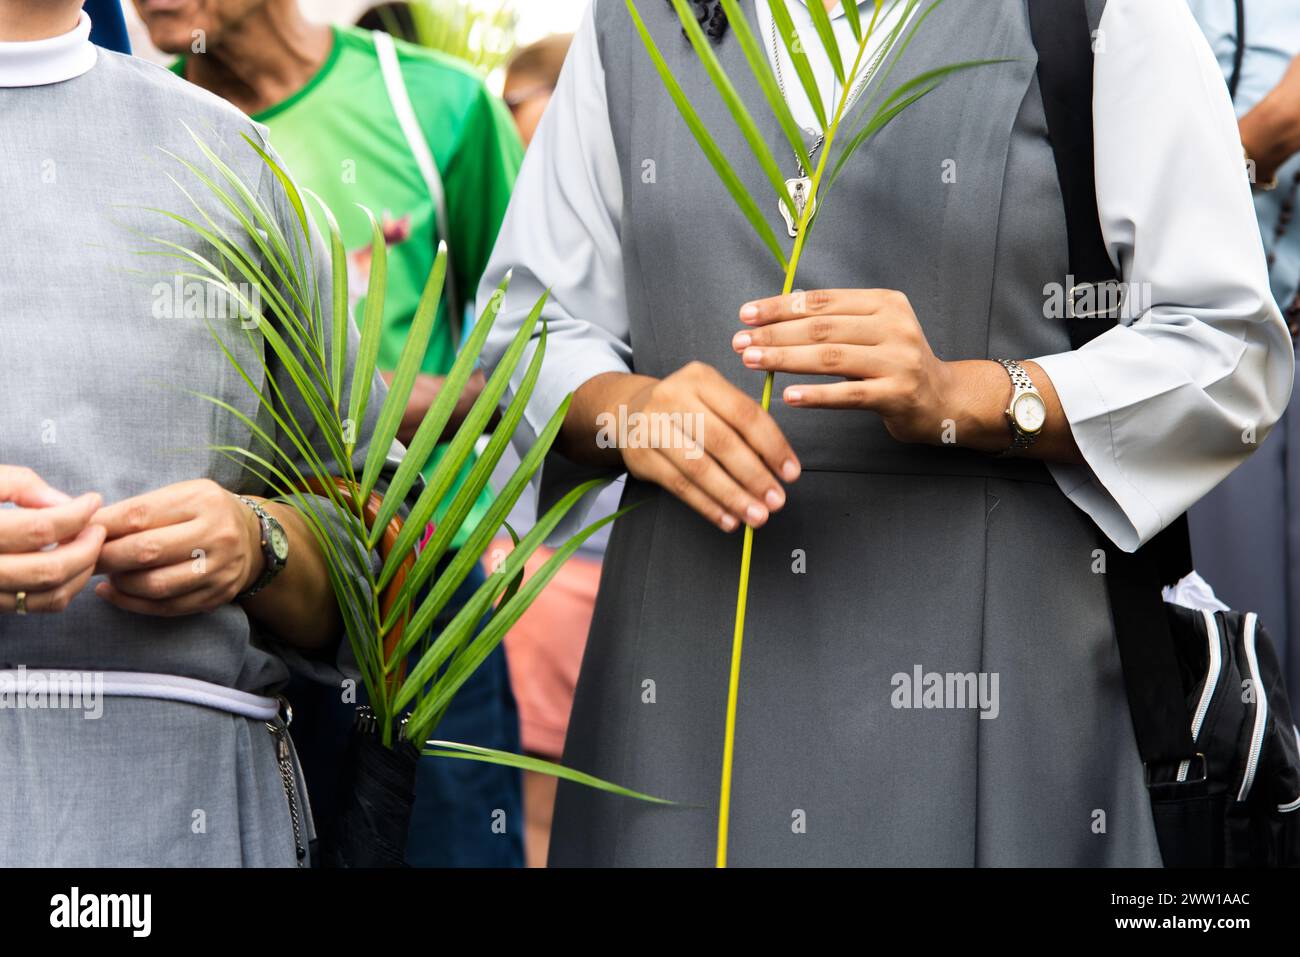 Salvador, Bahia, Brésil - 14 avril 2019 : on voit des catholiques marcher et prier pendant la célébration du dimanche des Rameaux dans la ville de Salvador, Bahia. Banque D'Images